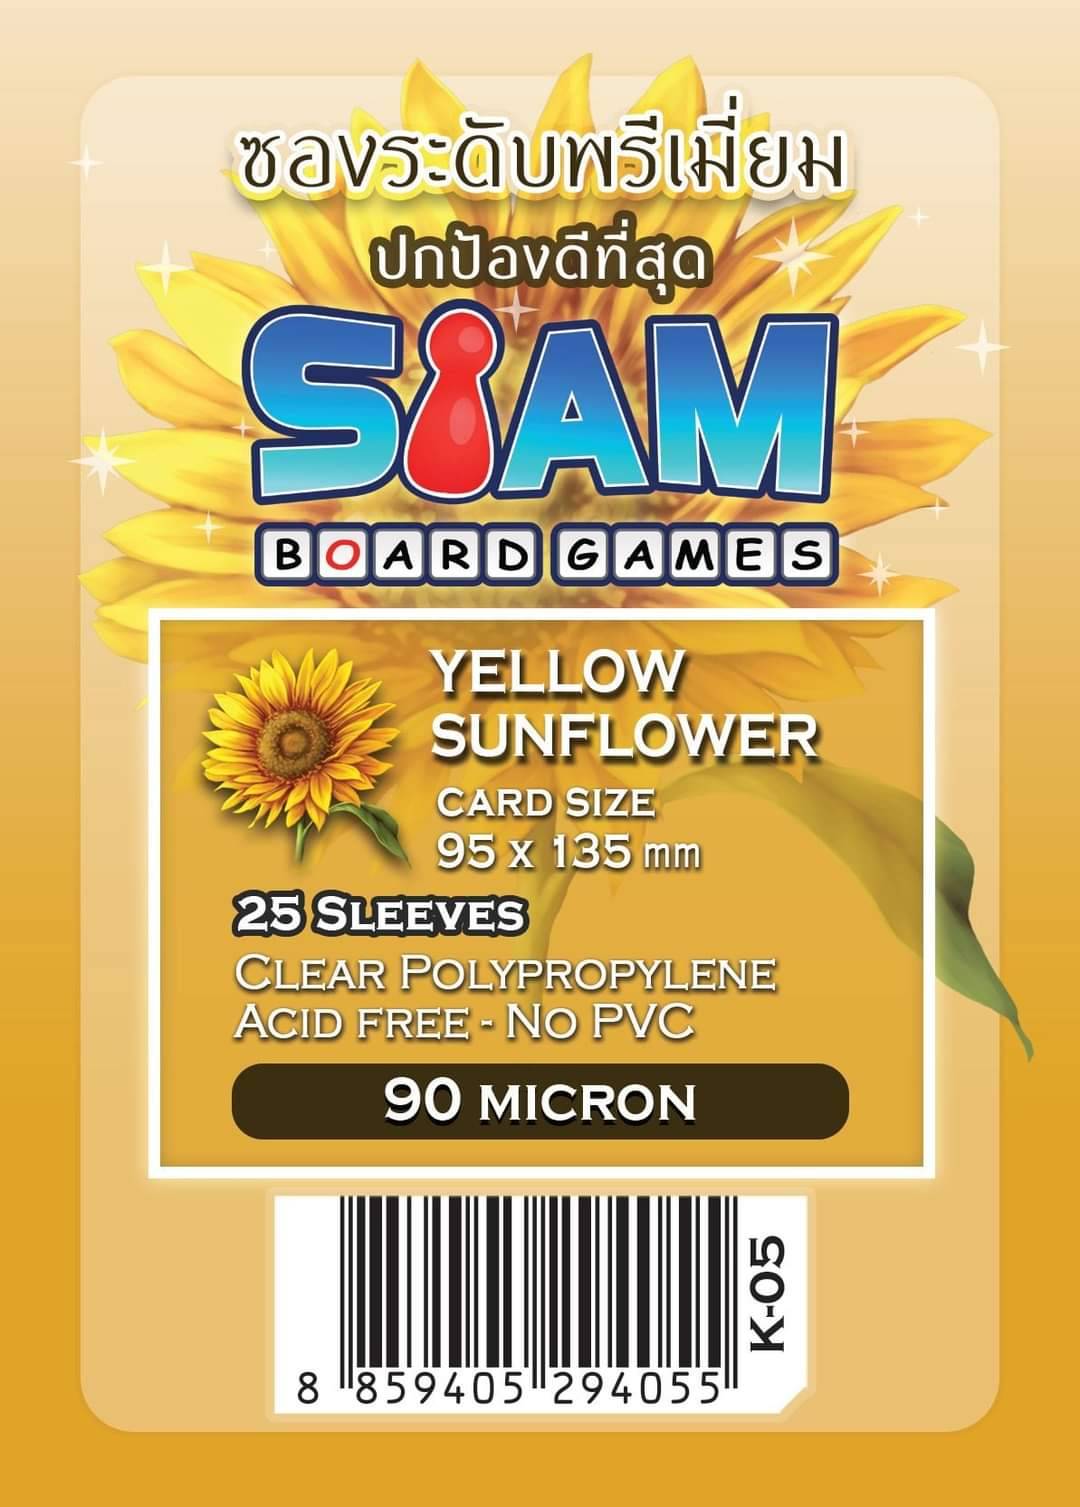 ซองใส่การ์ดระดับพรีเมี่ยมรุ่นดอกไม้ Yellow Sunflower ขนาด 95 x 135 มม. ความหนา 90 ไมครอน (Premium Card Sleeves: Yellow Sunflower - 95 x 135 mm / 90 micron)